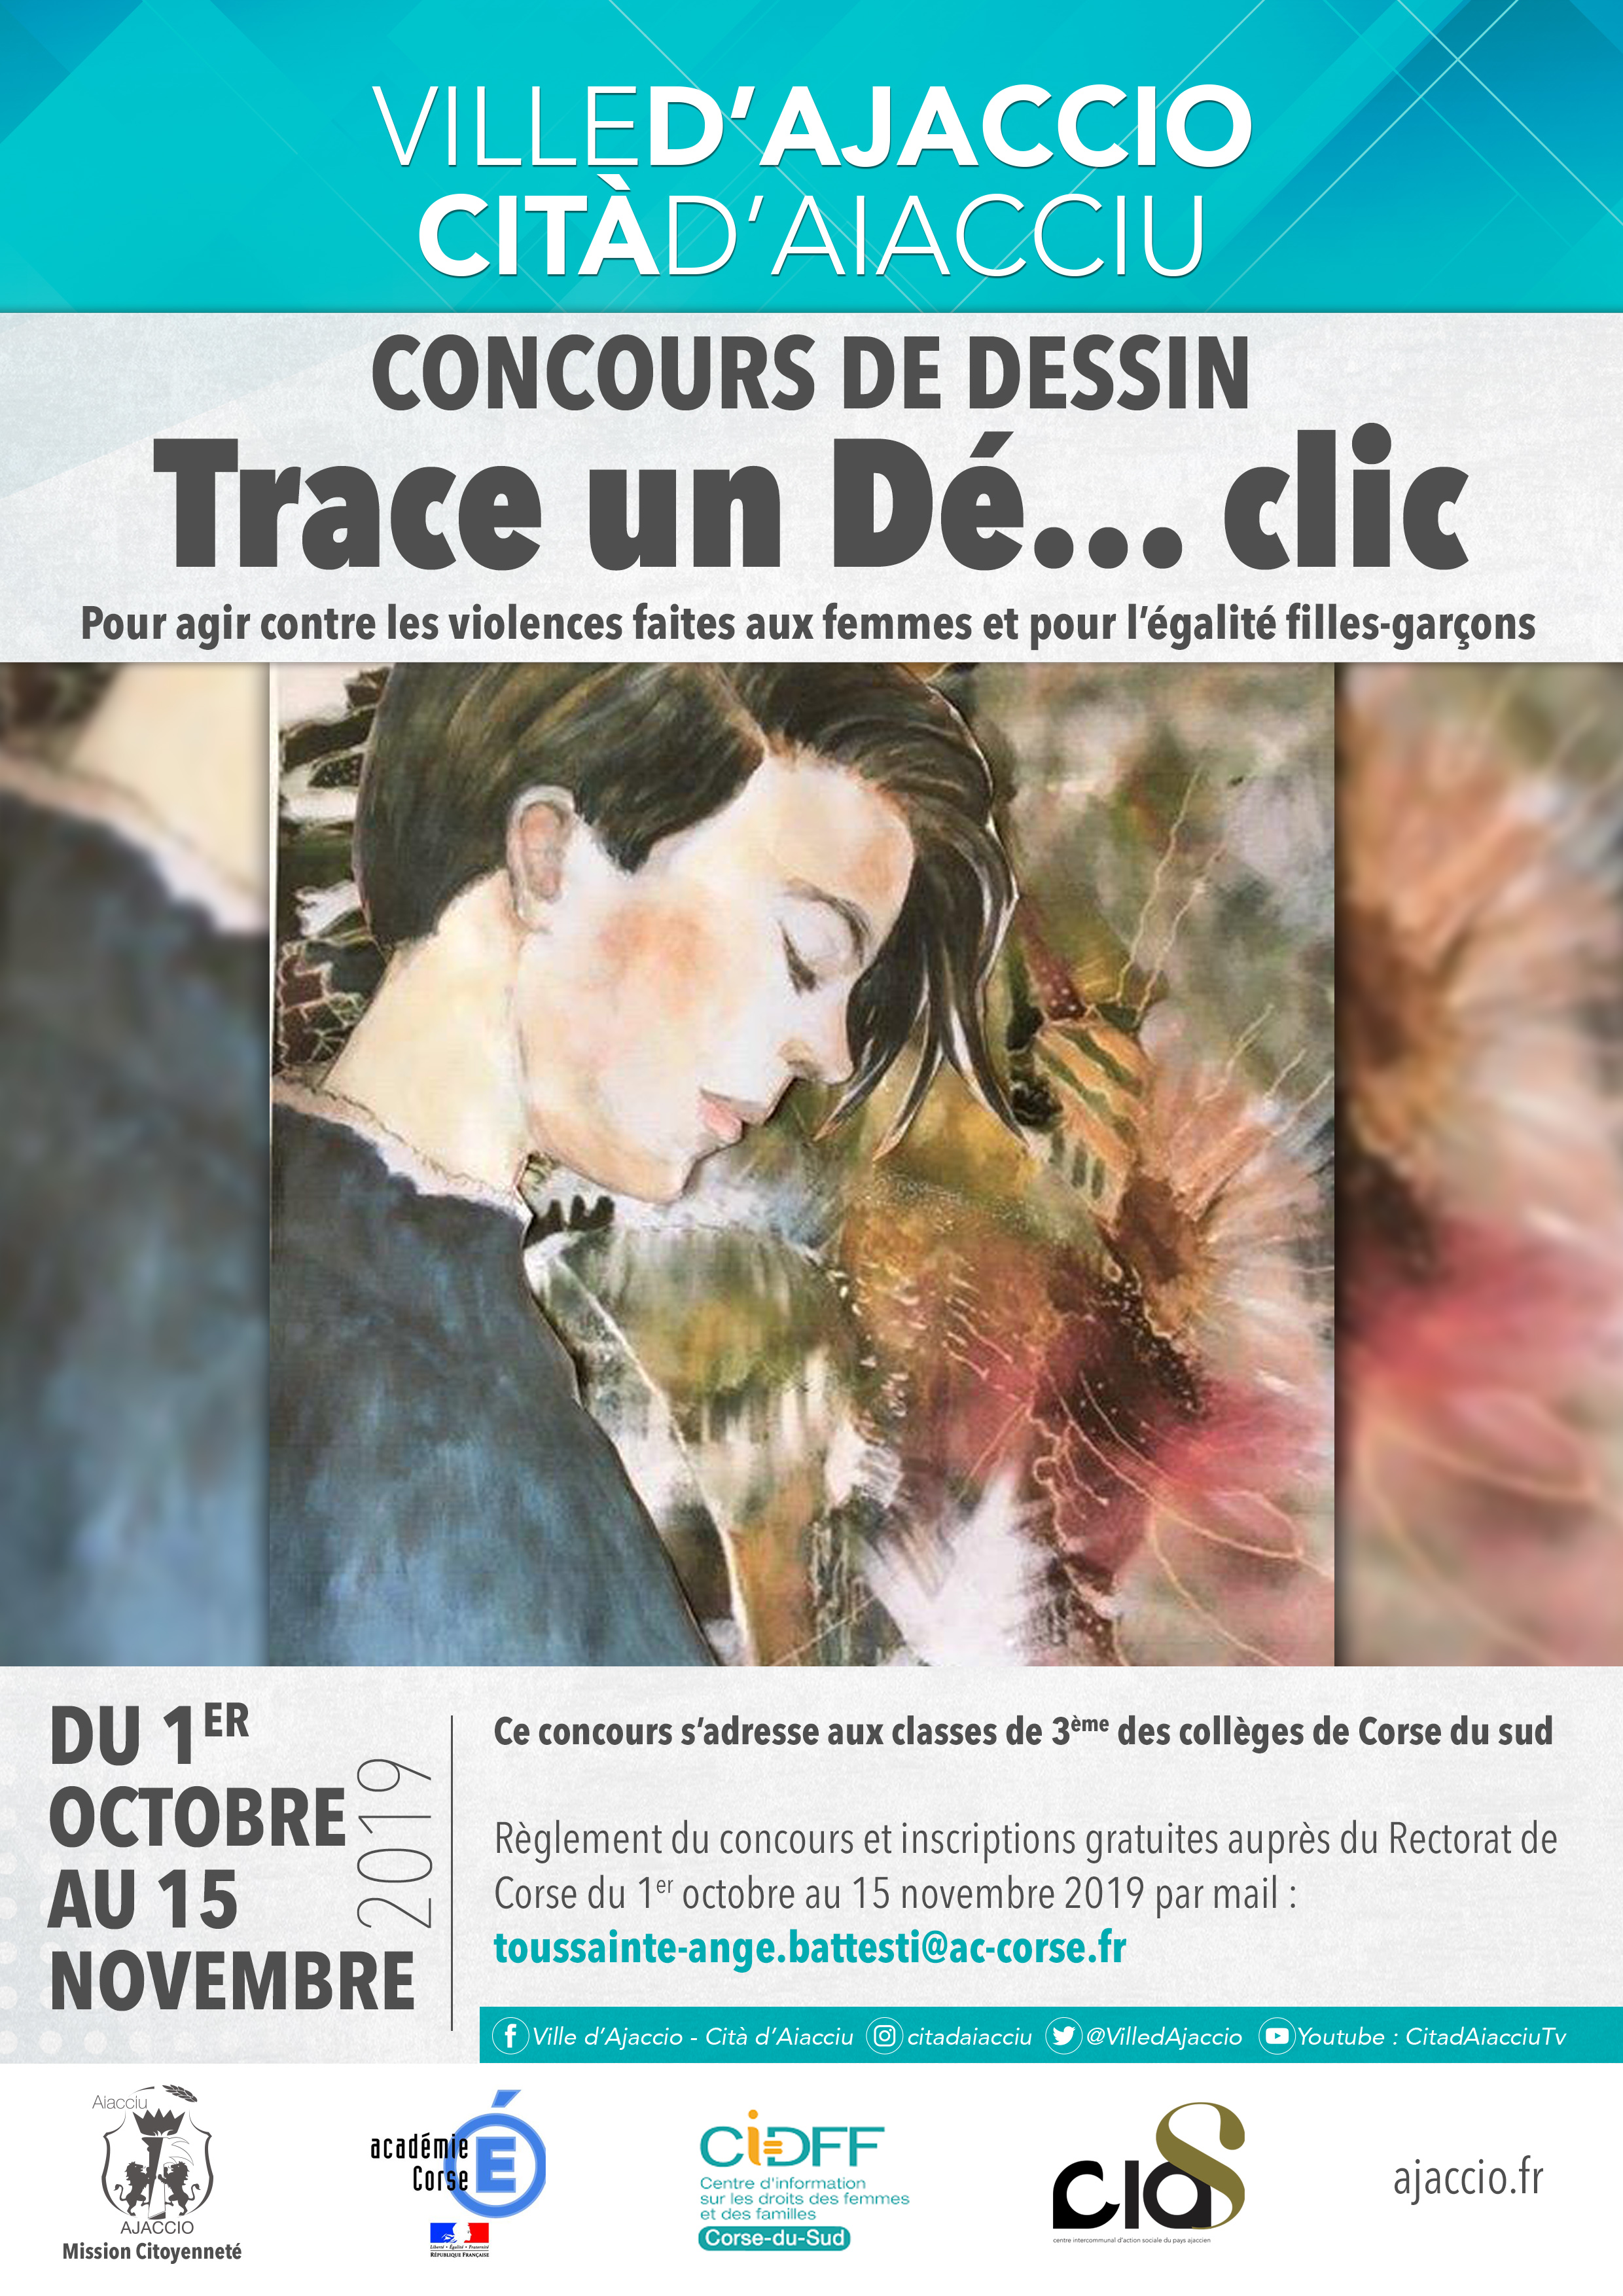 Corse du Sud : Un concours de dessin pour lutter contre les violences faites aux femmes 